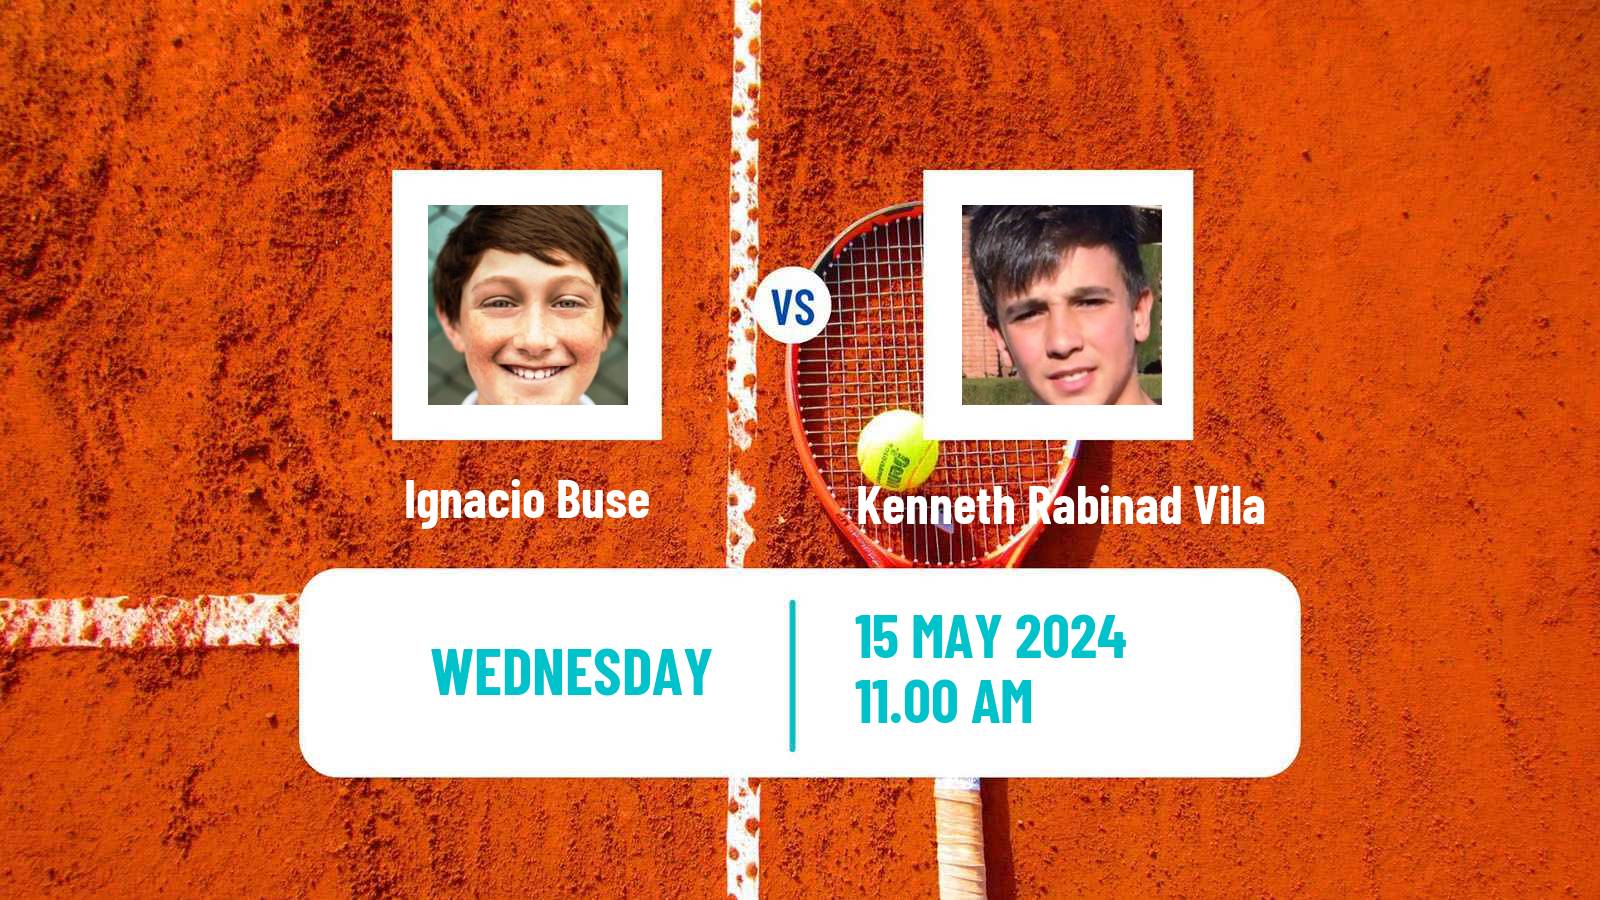 Tennis ITF M25 Vic Men Ignacio Buse - Kenneth Rabinad Vila